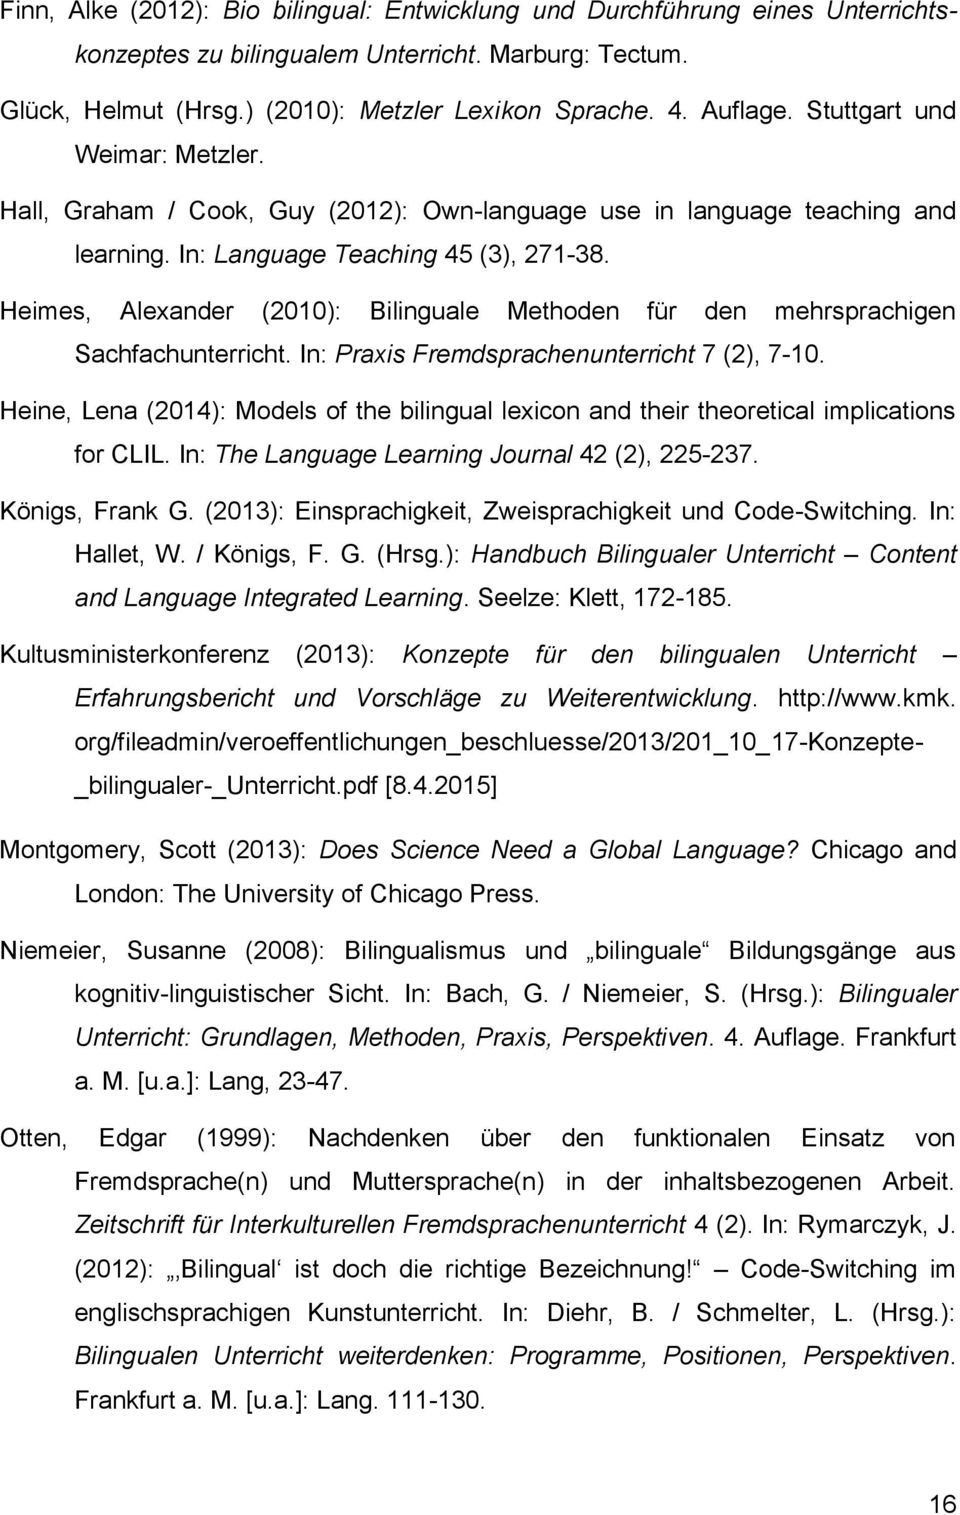 Heimes, Alexander (2010): Bilinguale Methoden für den mehrsprachigen Sachfachunterricht. In: Praxis Fremdsprachenunterricht 7 (2), 7-10.